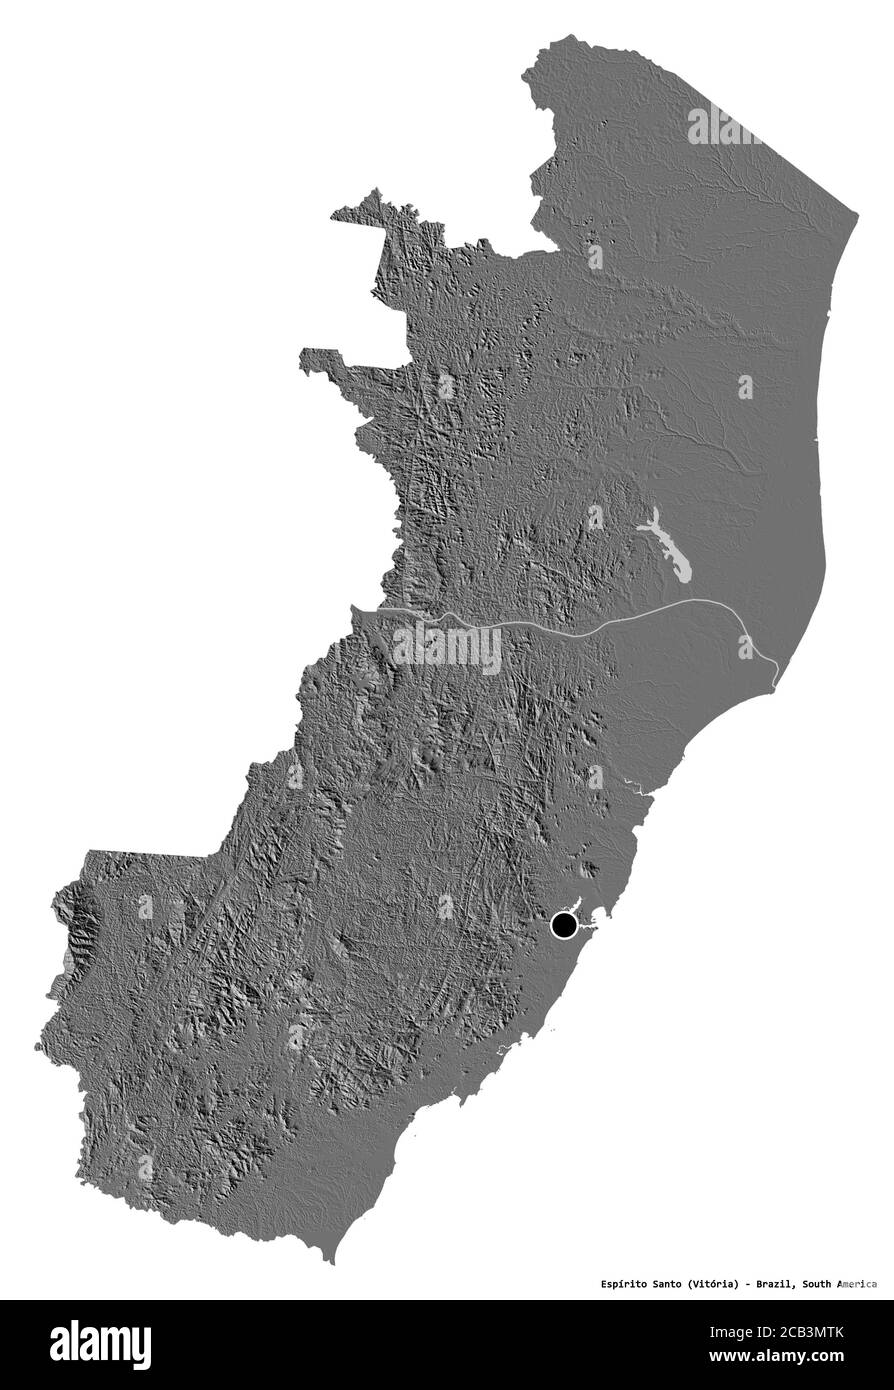 Forma de Espírito Santo, estado de Brasil, con su capital aislada sobre fondo blanco. Mapa de elevación en dos niveles. Renderizado en 3D Foto de stock